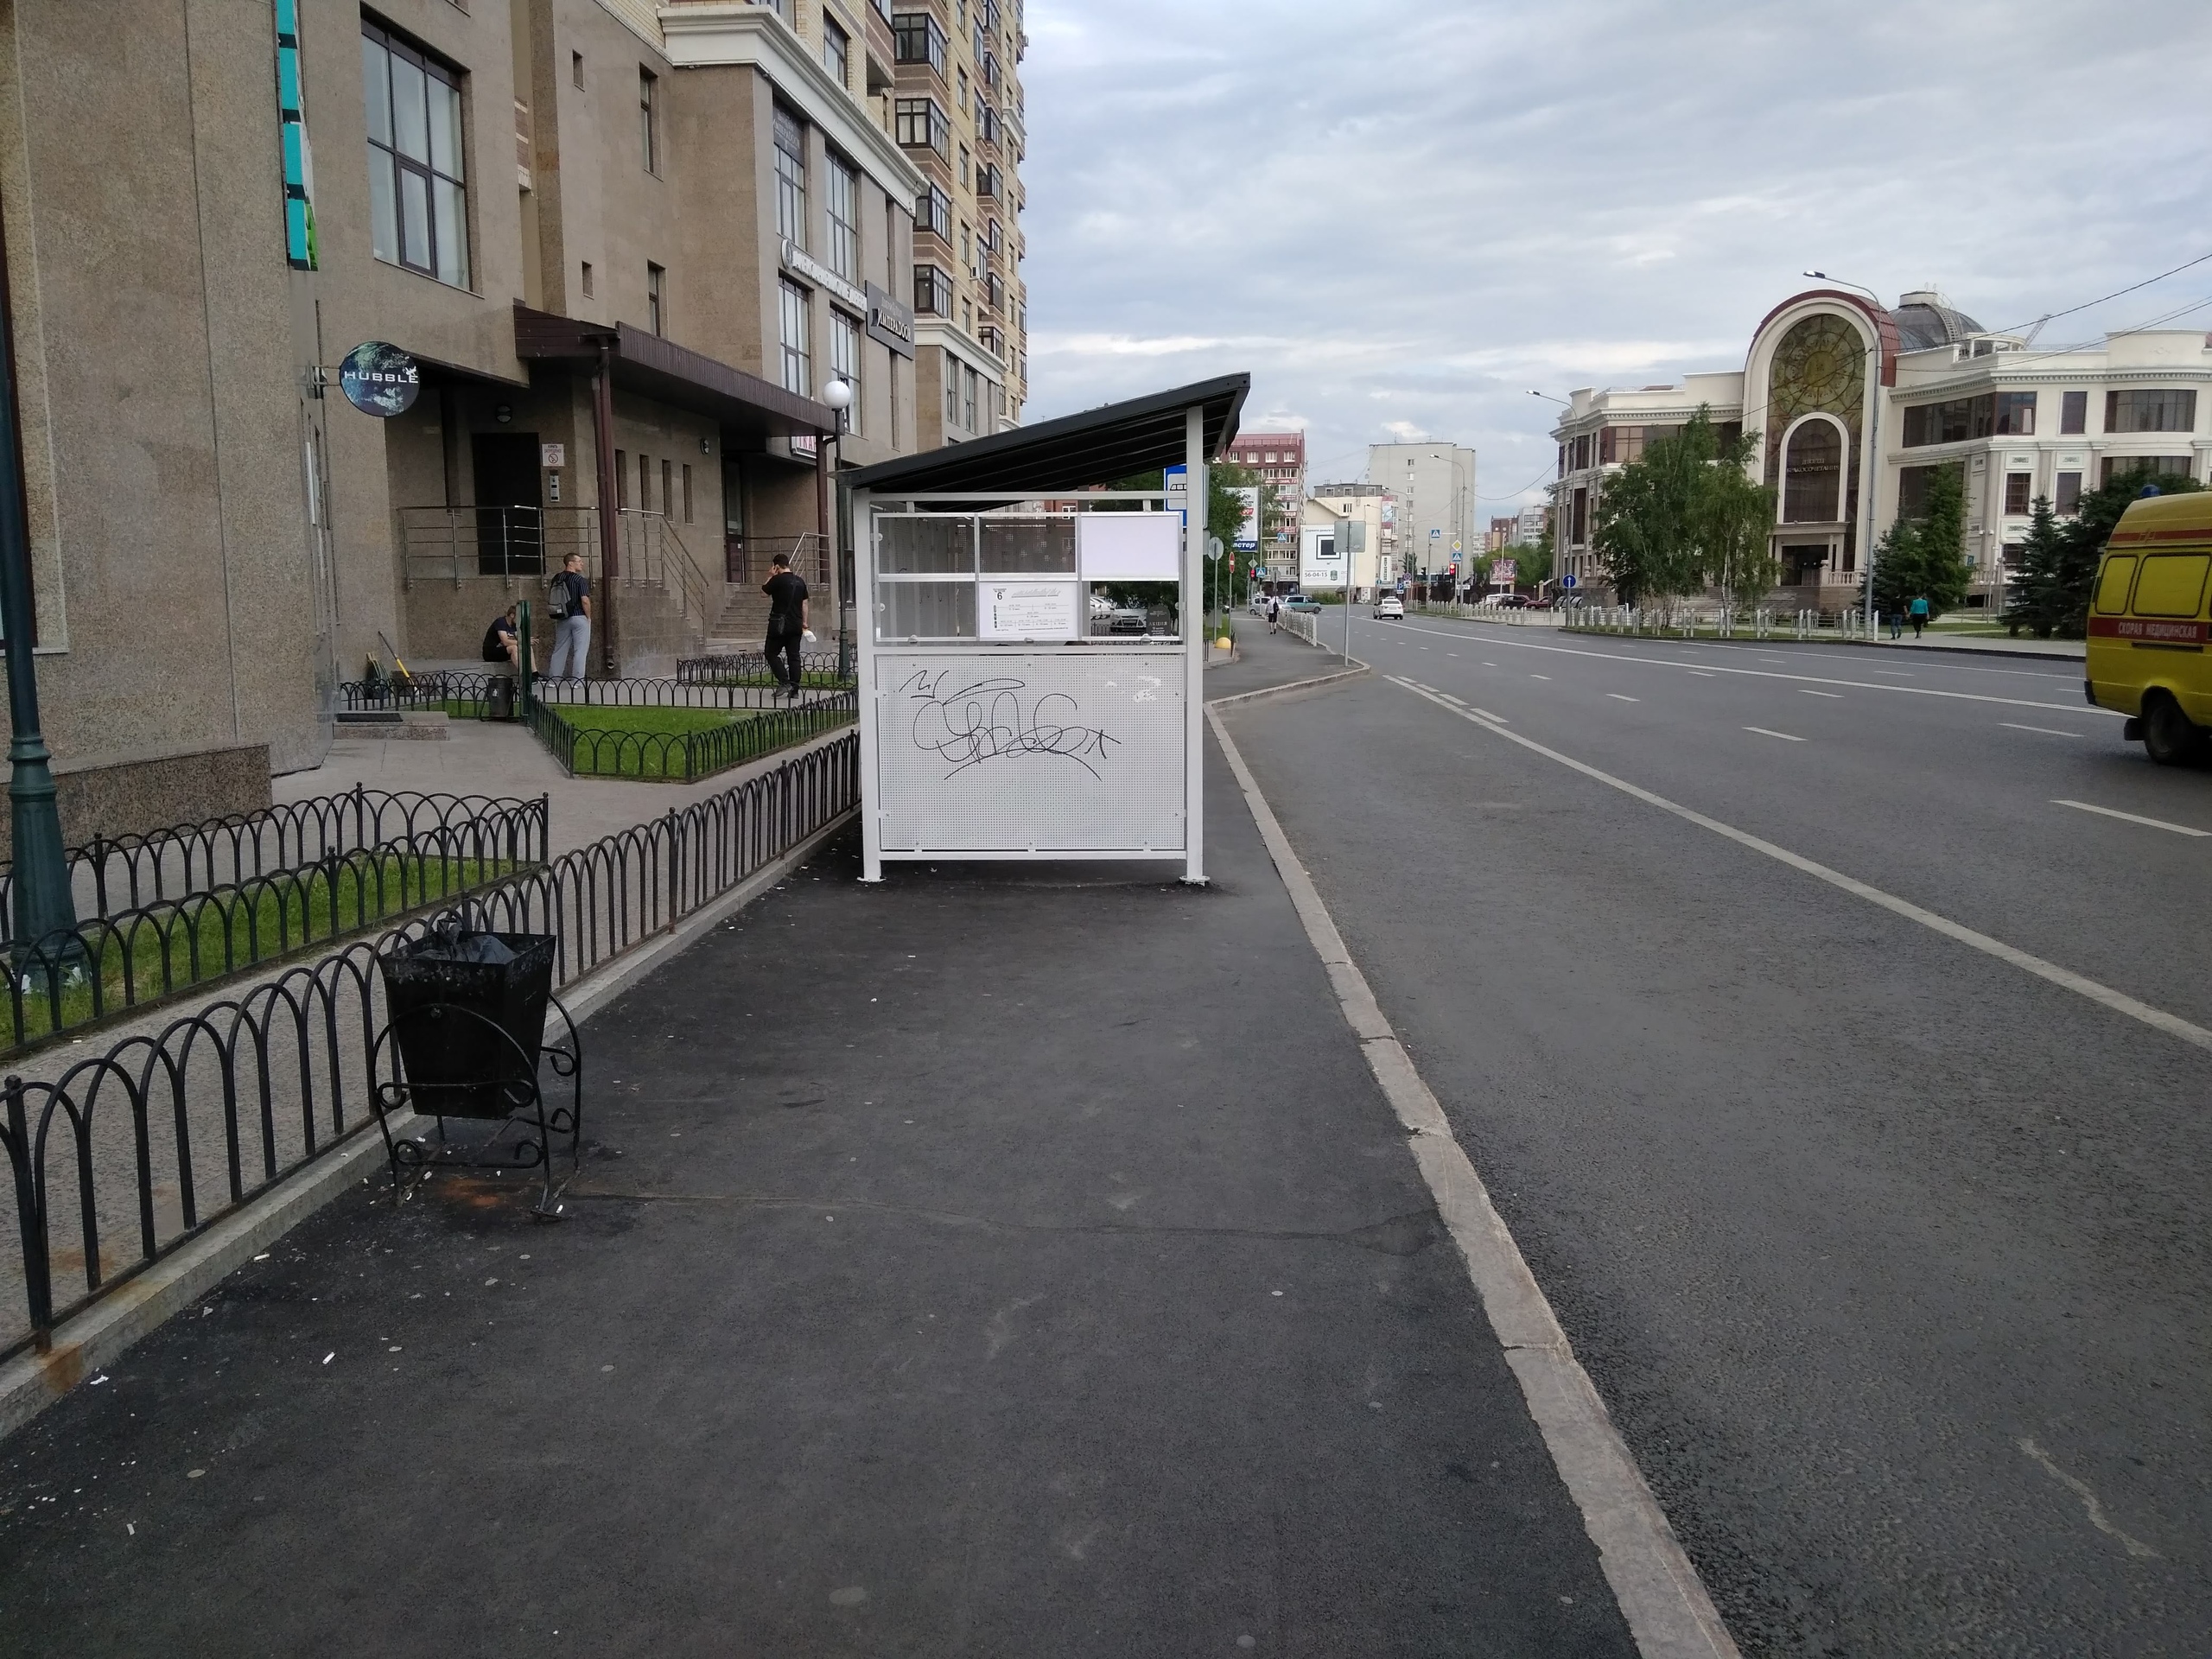 Павильон для ожидания общественного транспорта поставили прямо на тротуар